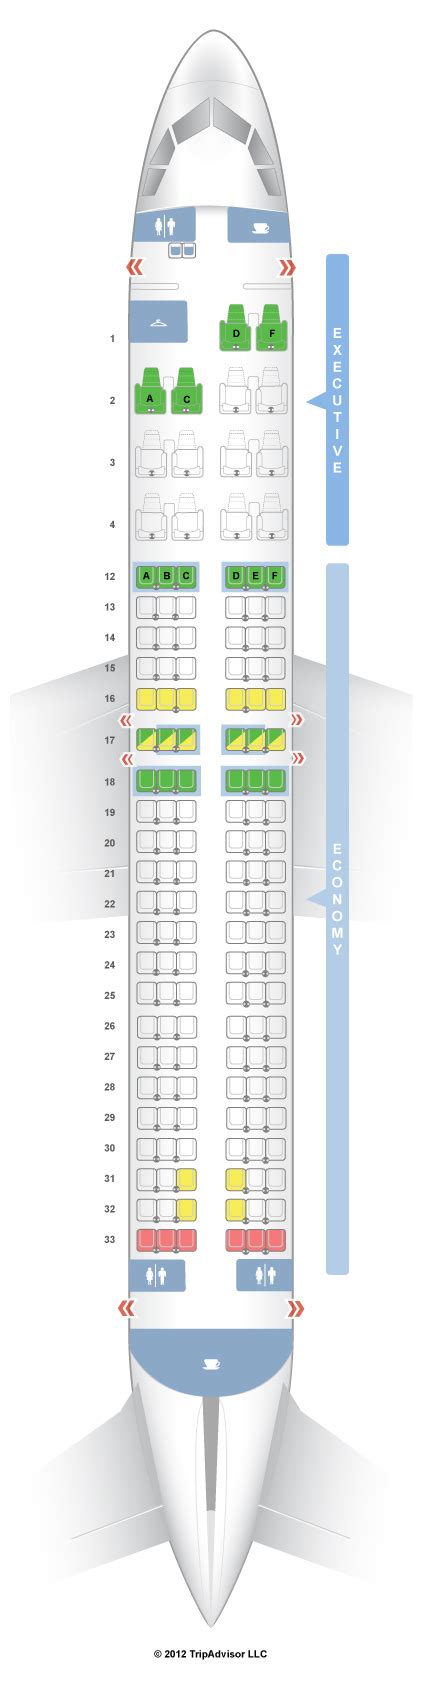 Seatguru Seat Map Air Canada Airbus A320 320 Air Canada Flights